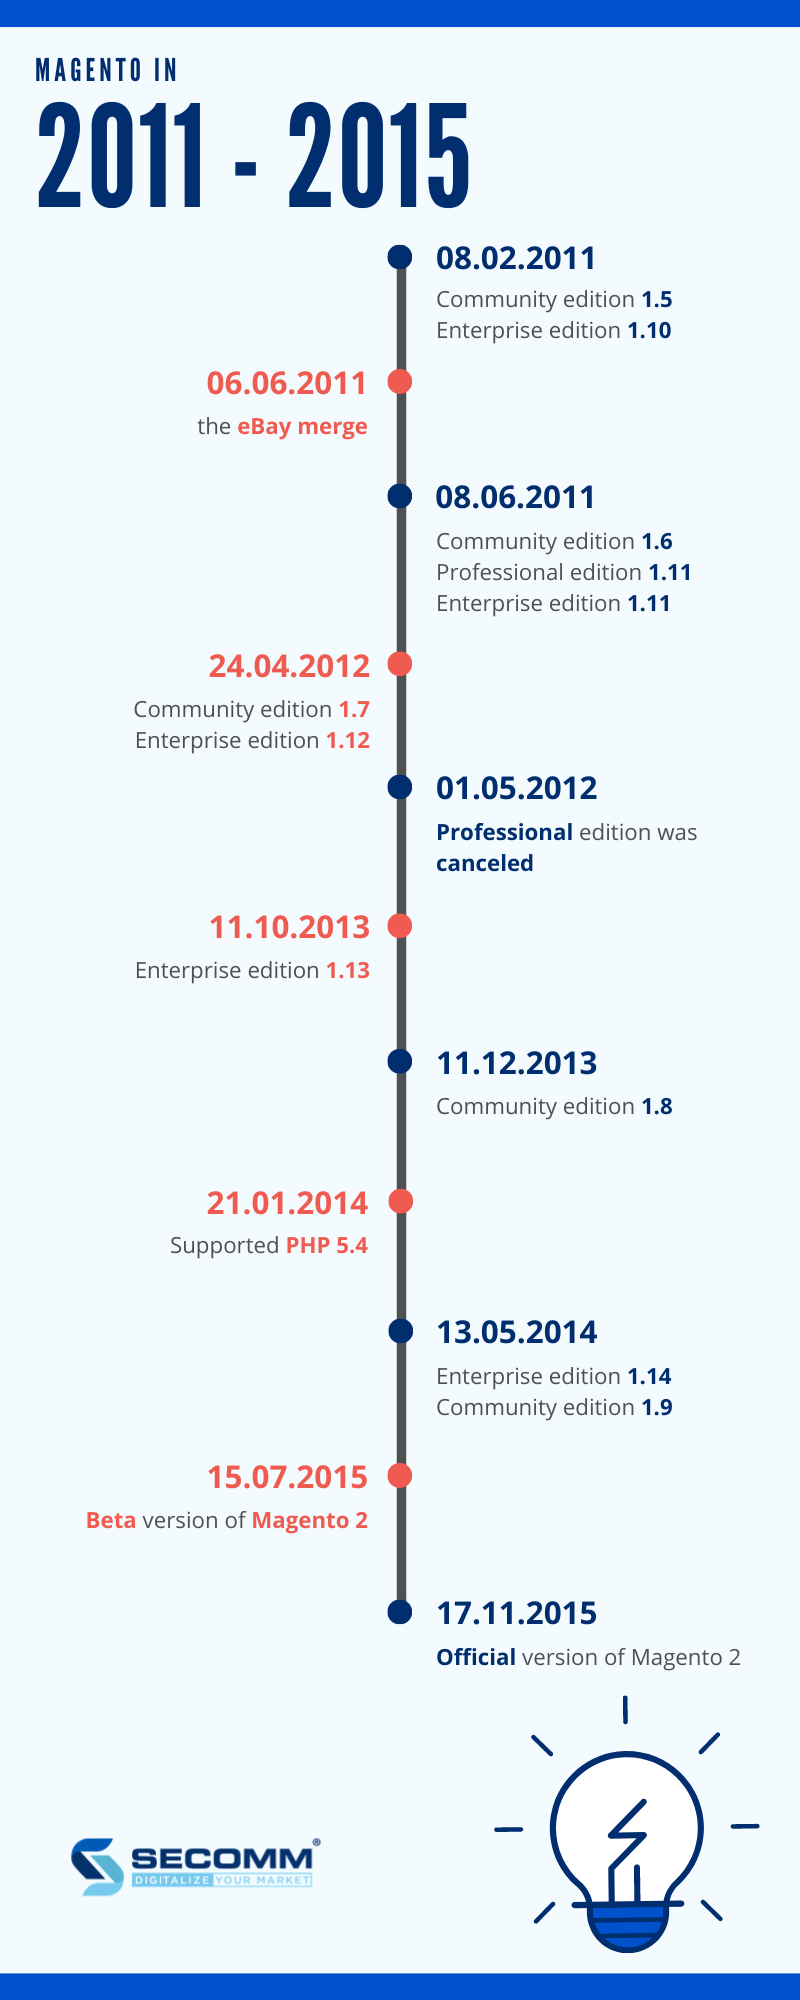 Magento timeline 2011 - 2015. Lược sử Magento 2